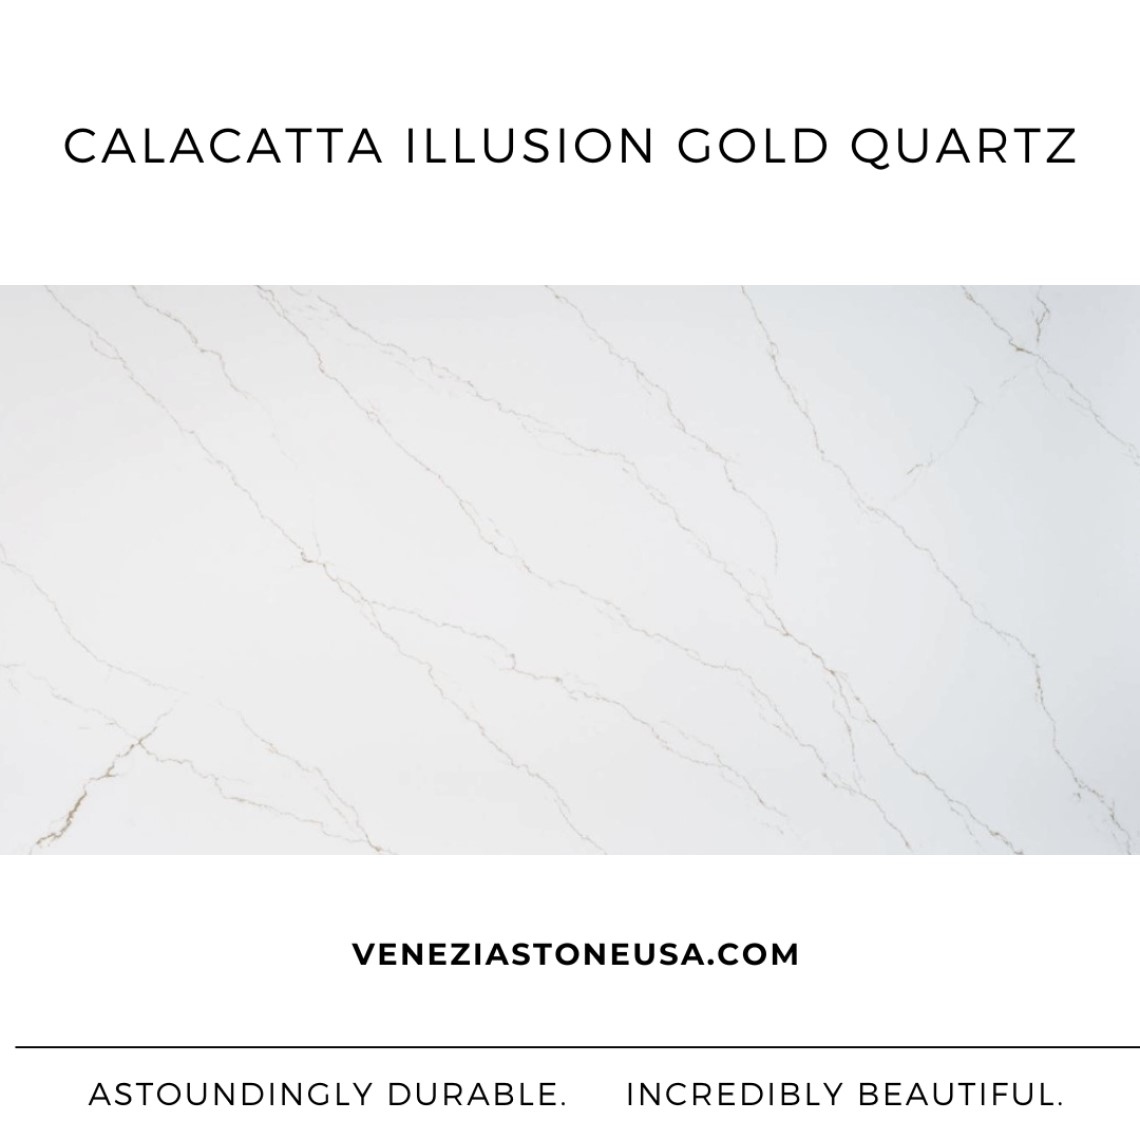 Calacatta Illusion Gold Quartz